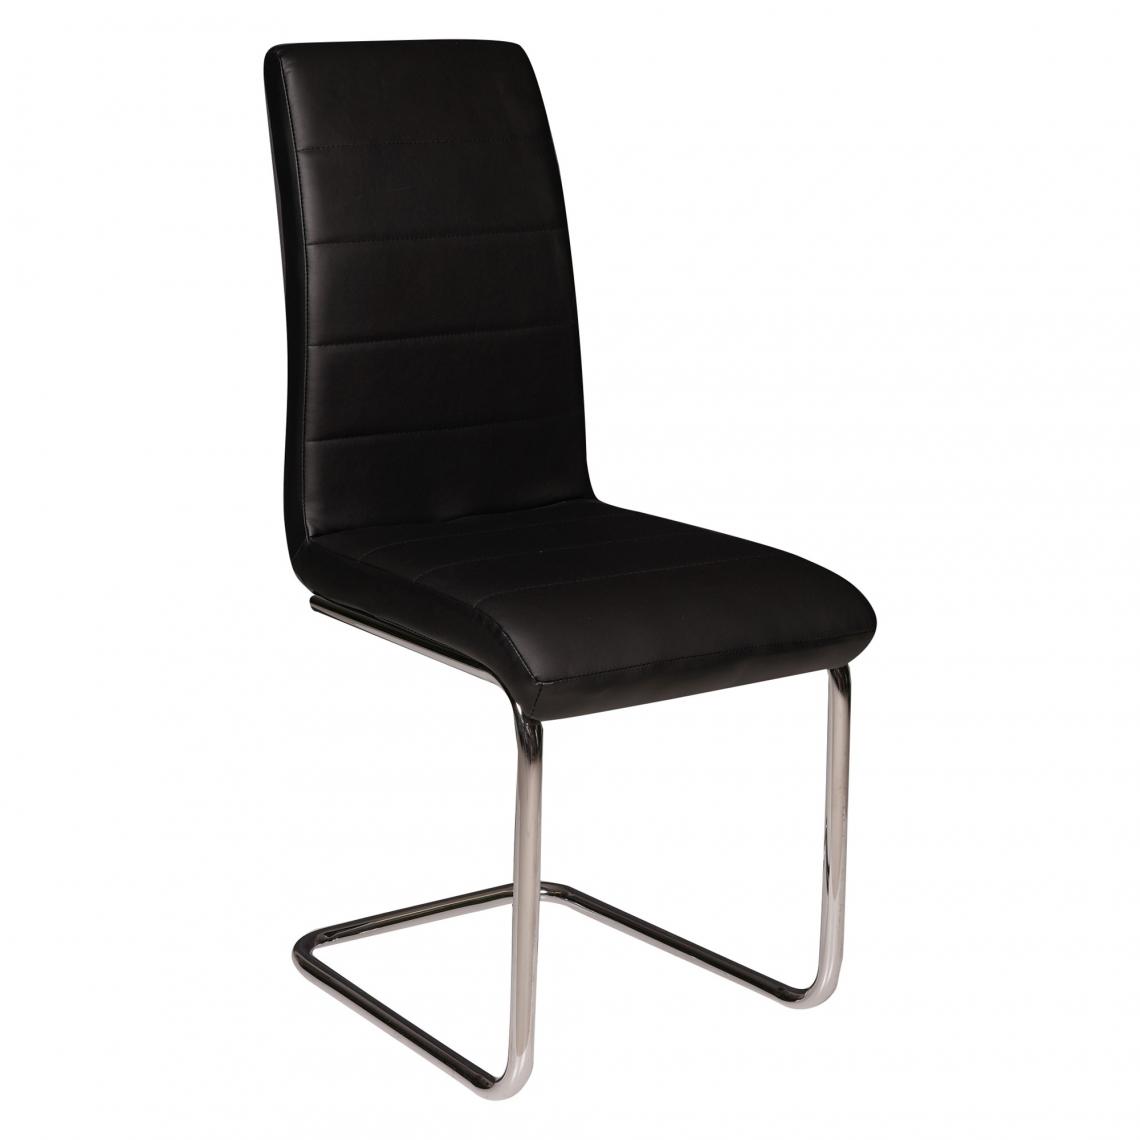 Alter - Chaise moderne en éco-cuir et pieds en métal chromé, 43x57h98 cm, couleur noire - Chaises